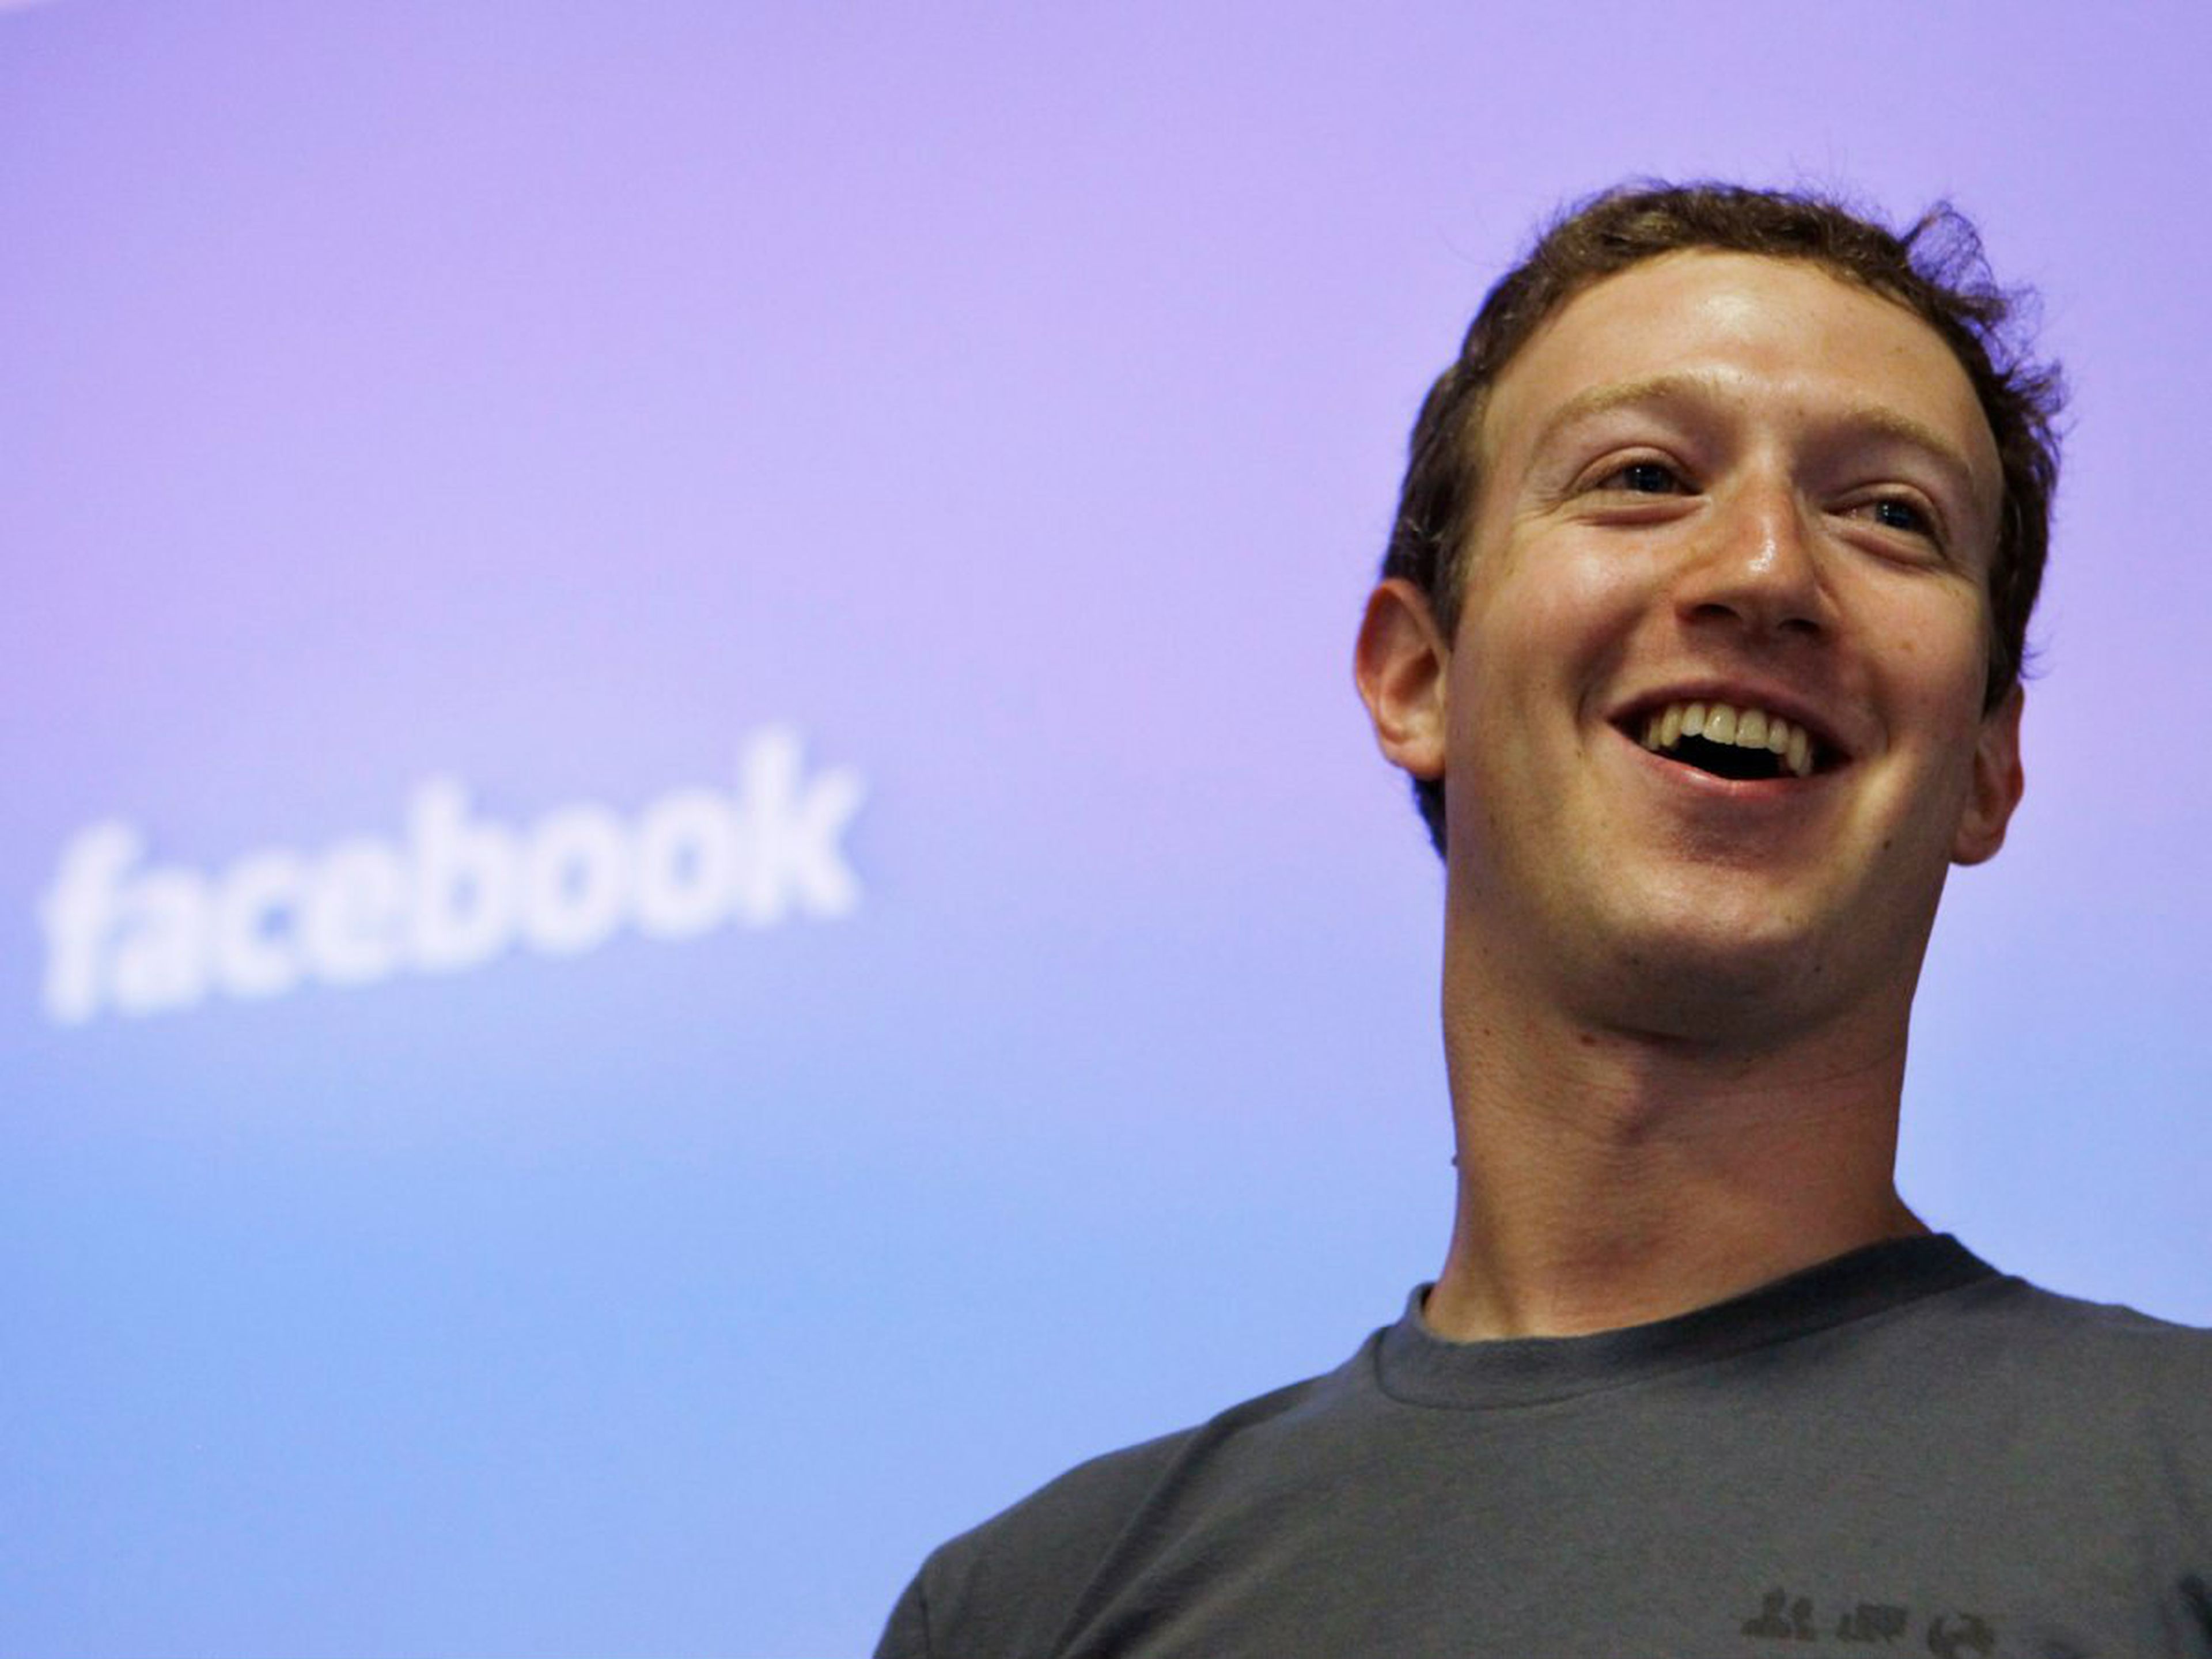 El fundador y consejero delegado de Facebook, Mark Zuckerberg.